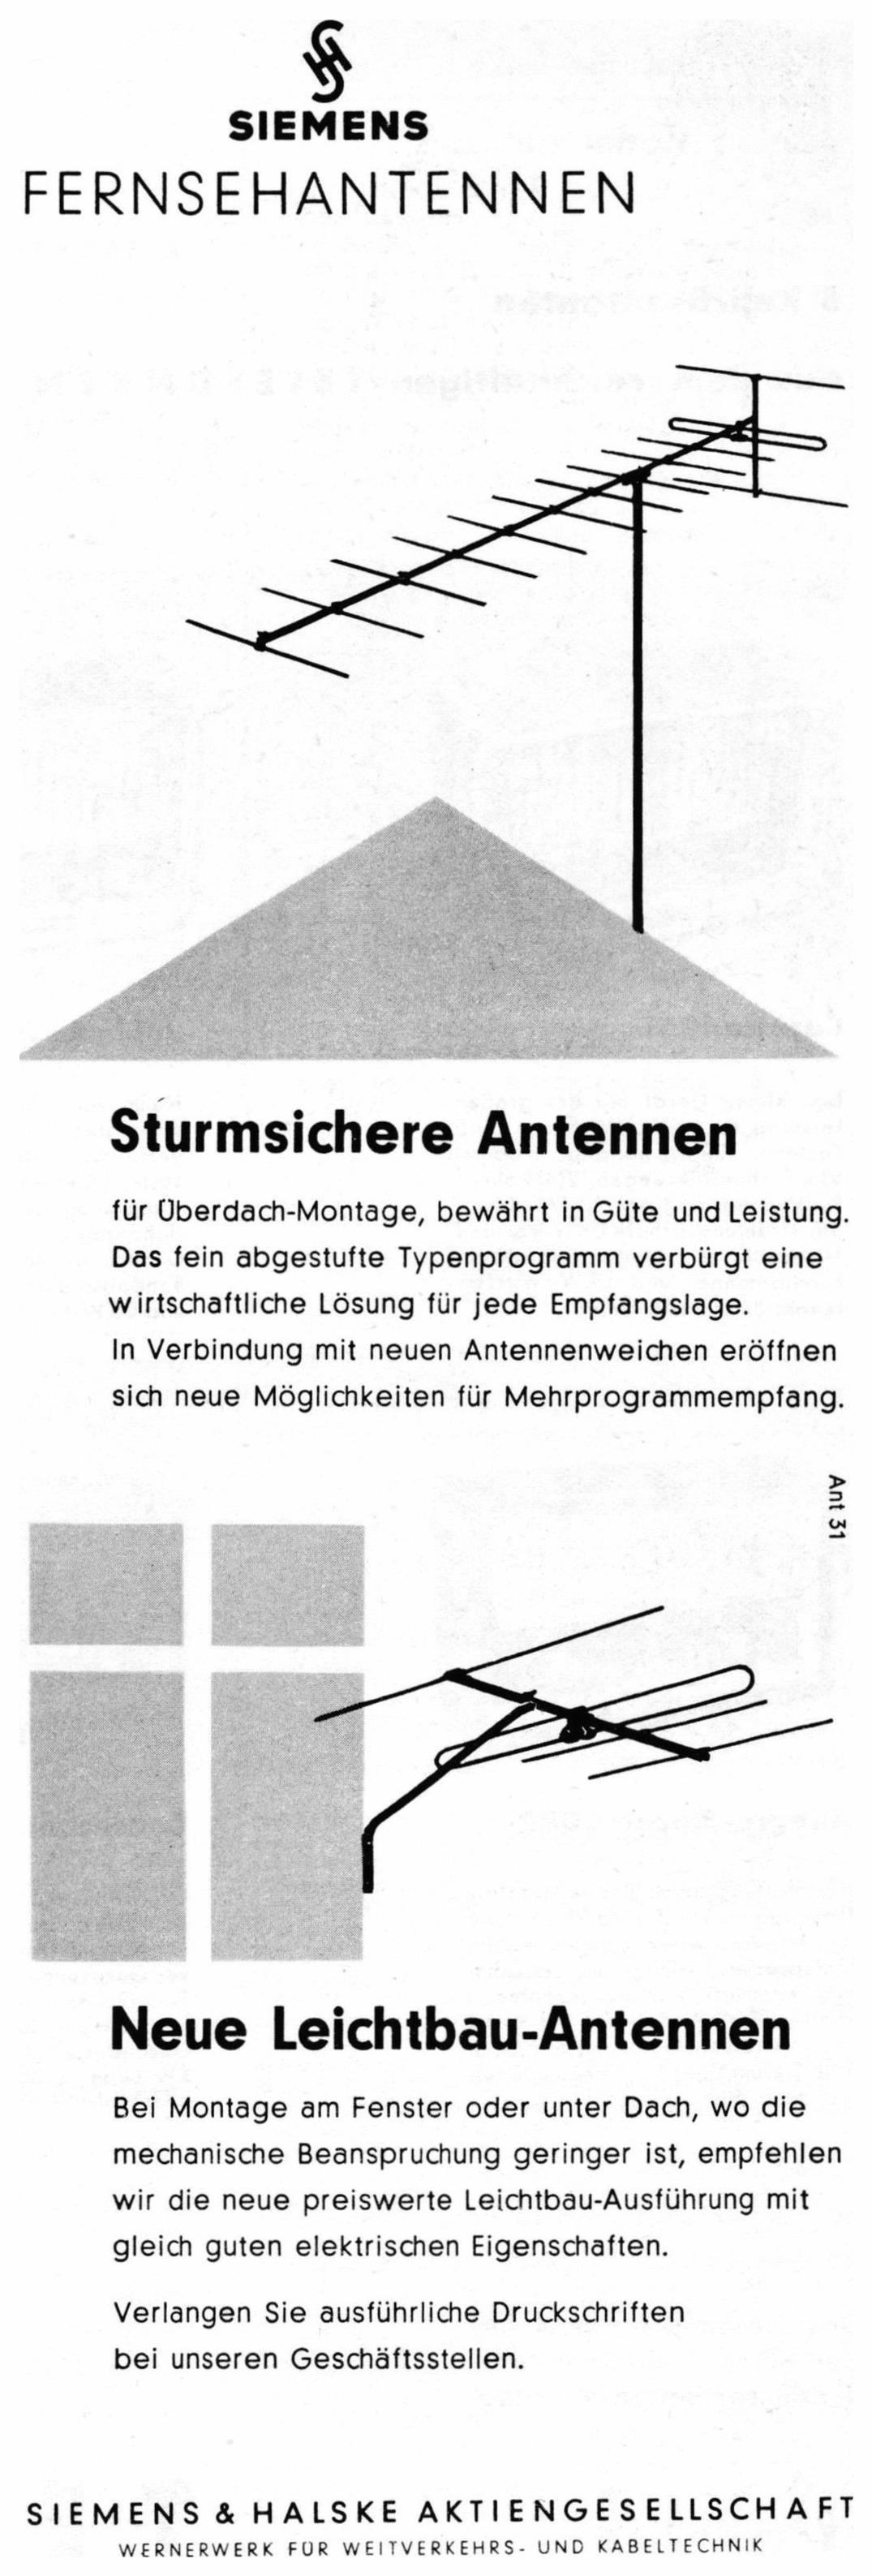 Siemens 1959 8.jpg